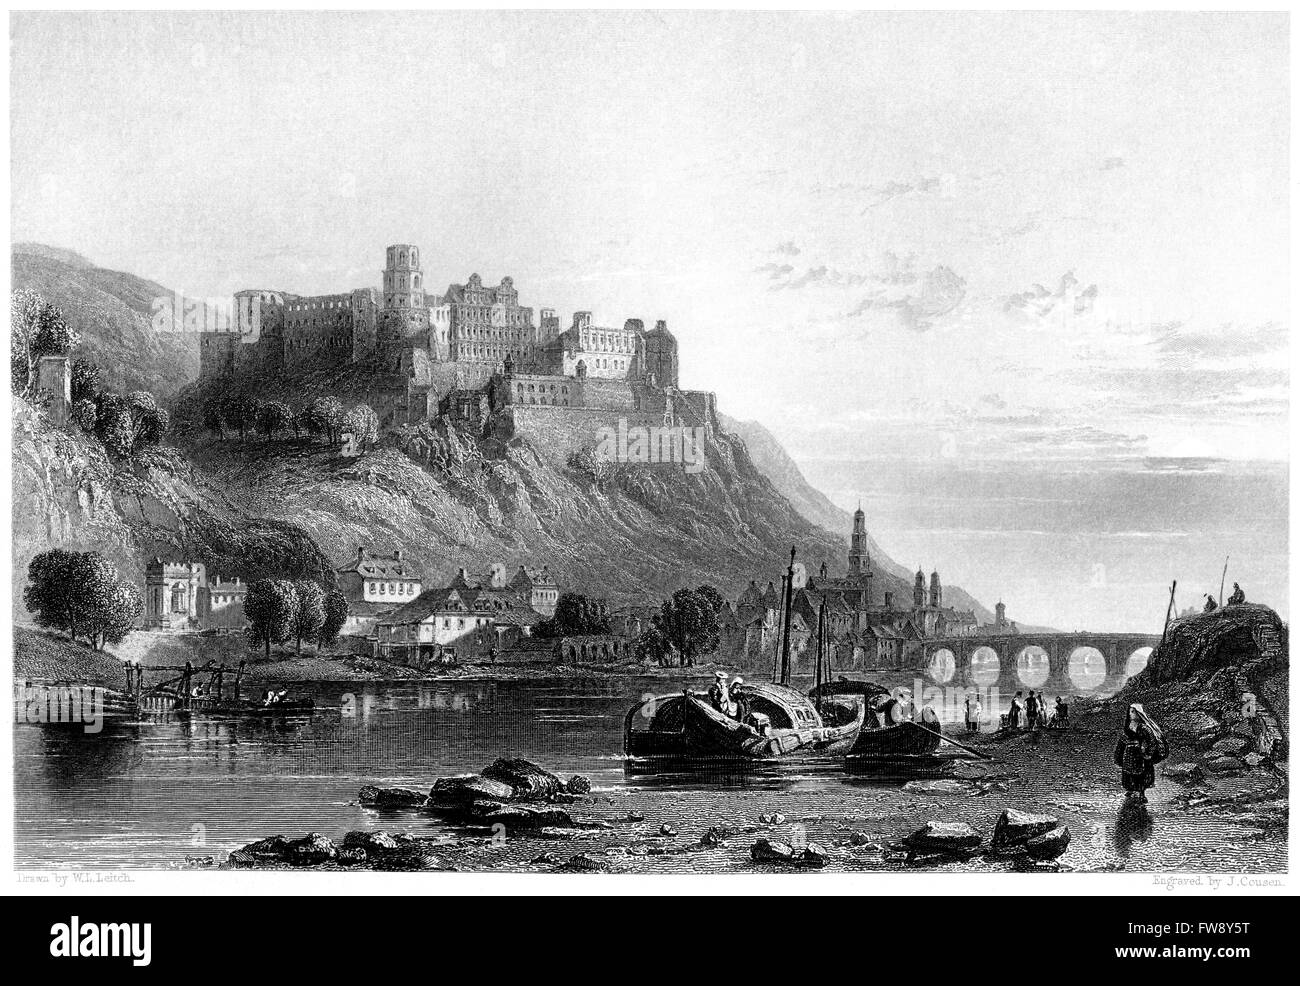 Une gravure de la ville et du château d'Heidelberg - Rhin numérisées à haute résolution à partir d'un livre imprimé en 1876. Banque D'Images